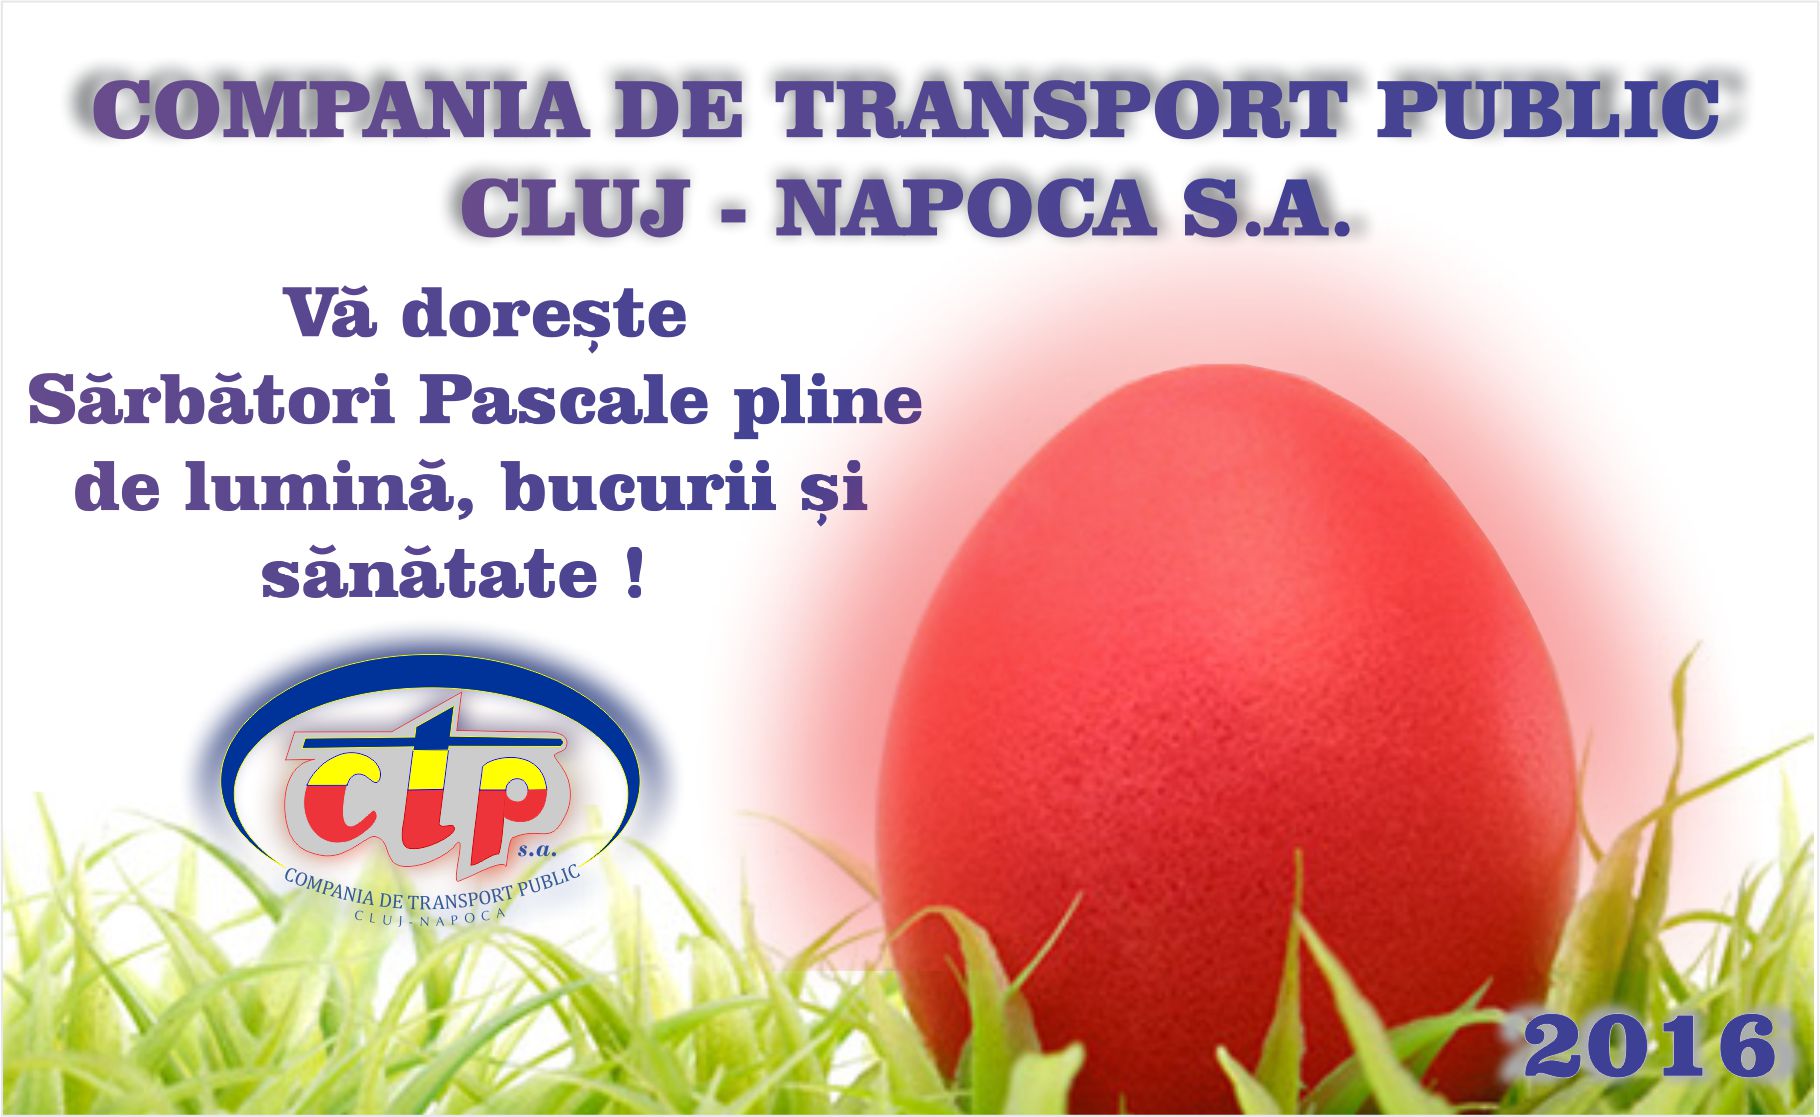 Compania de Transport Public Cluj-Napoca S.A. urează tuturor clienților și colaboratorilor Sărbători Fericite!